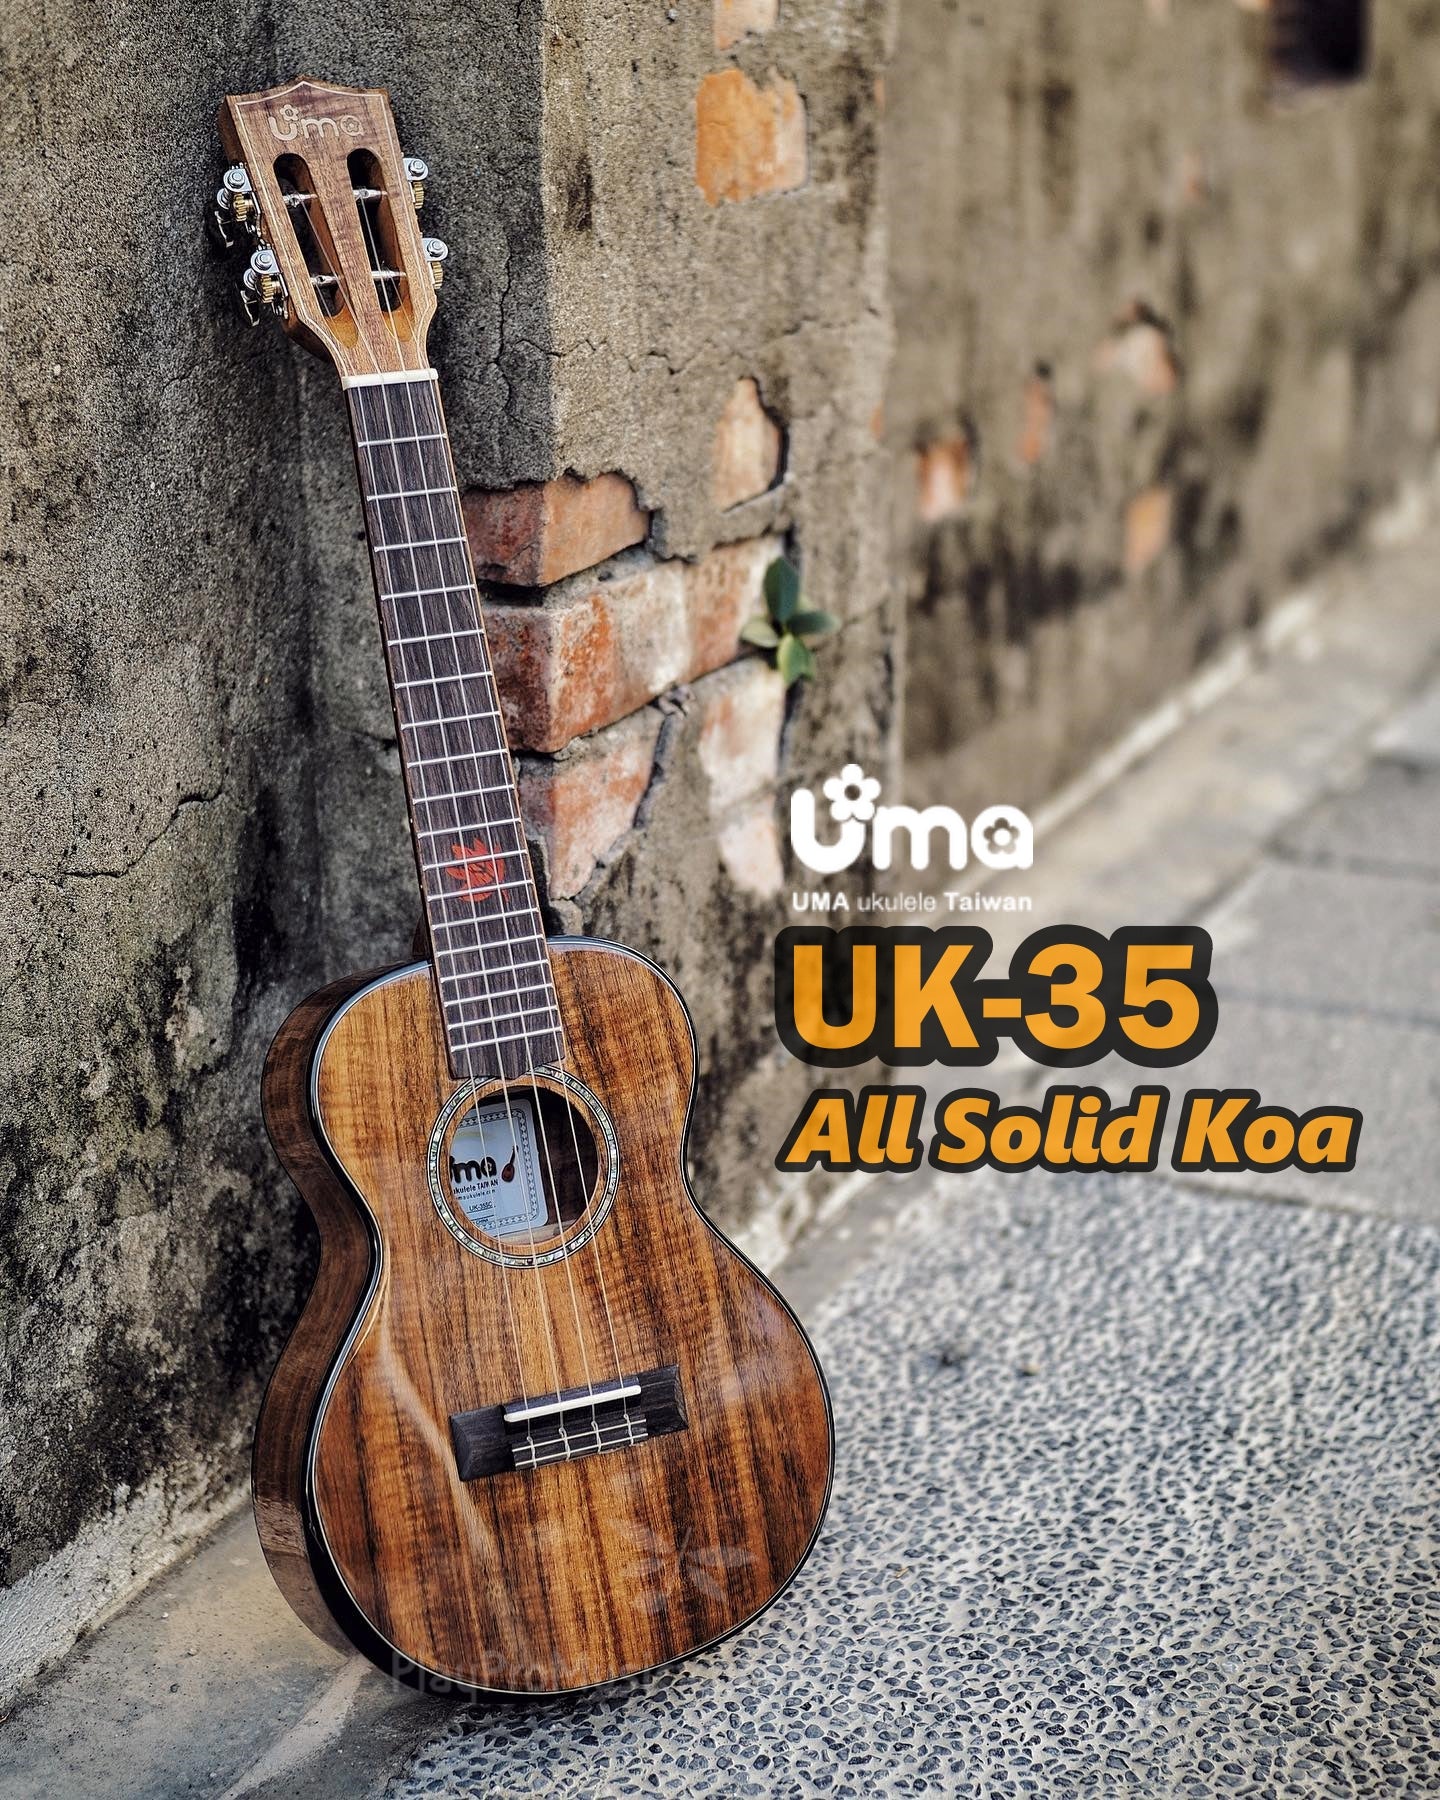 UK-35 All Solid Acacia Koa Ukulele / Ergonomic Body Curve Design